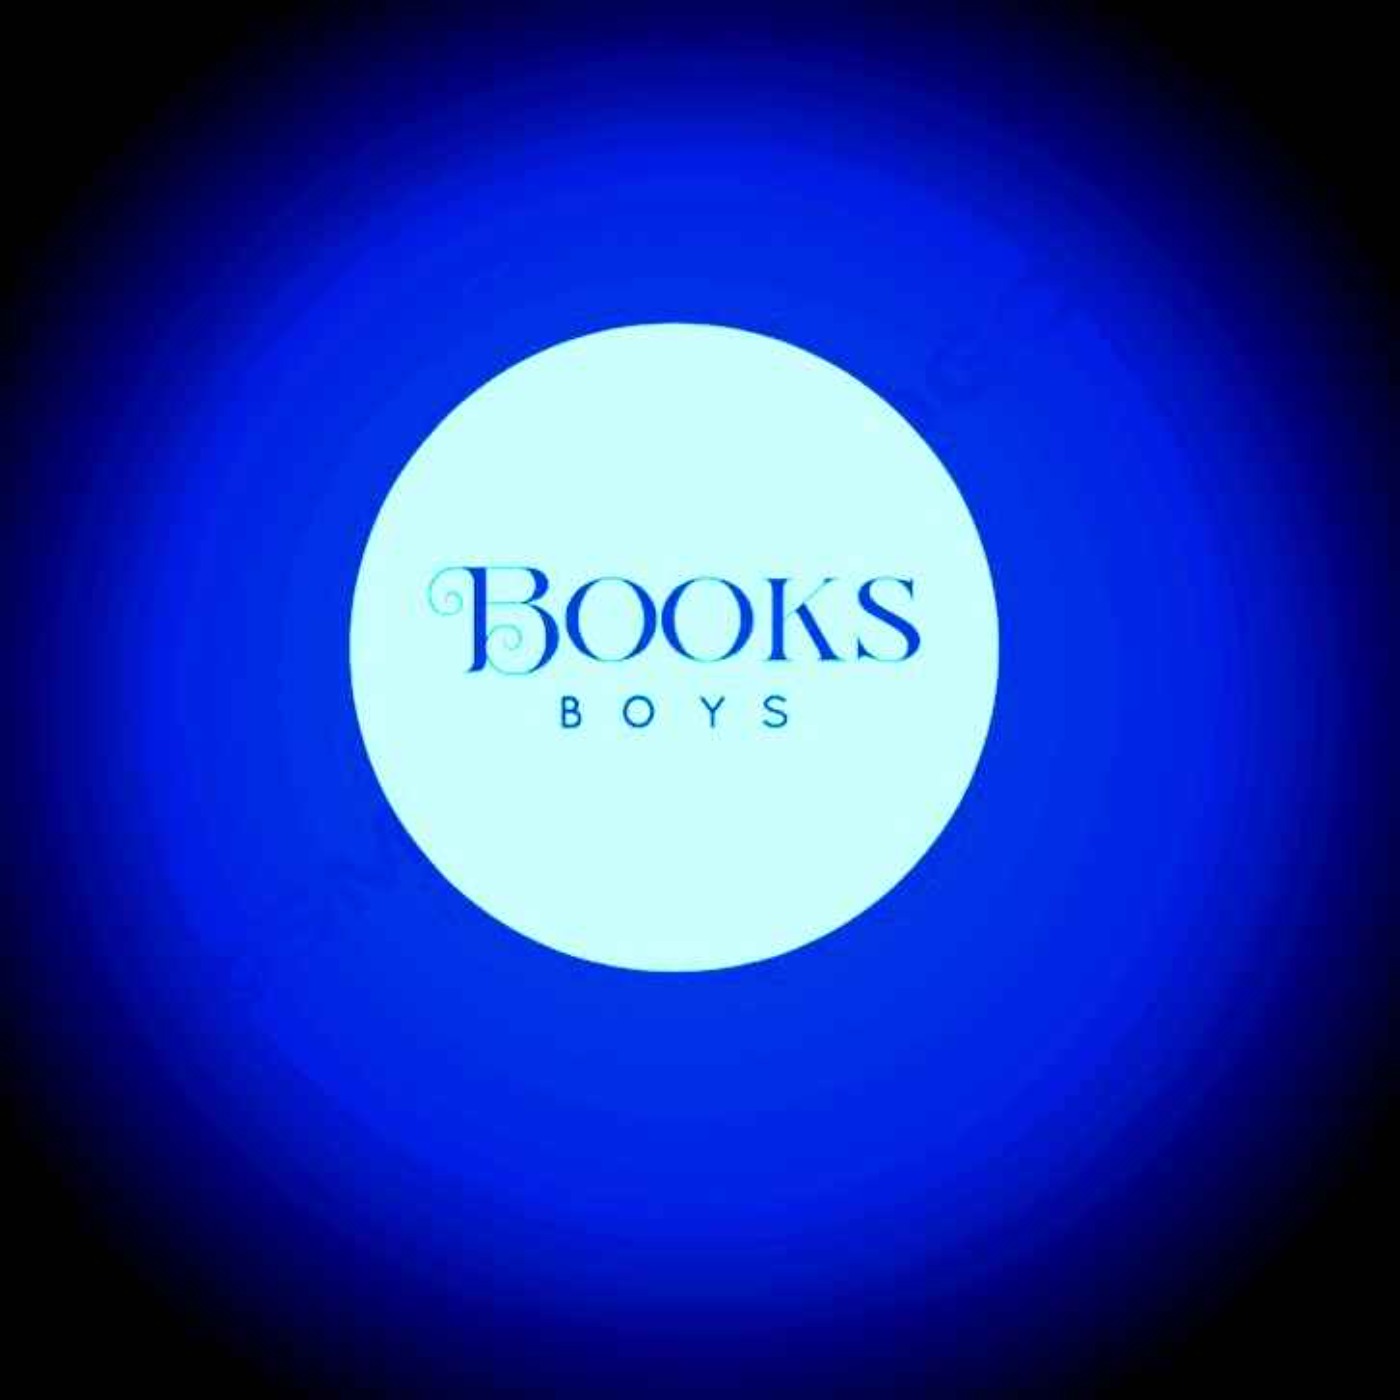 Books Boys Bonus: Kenneth Evren